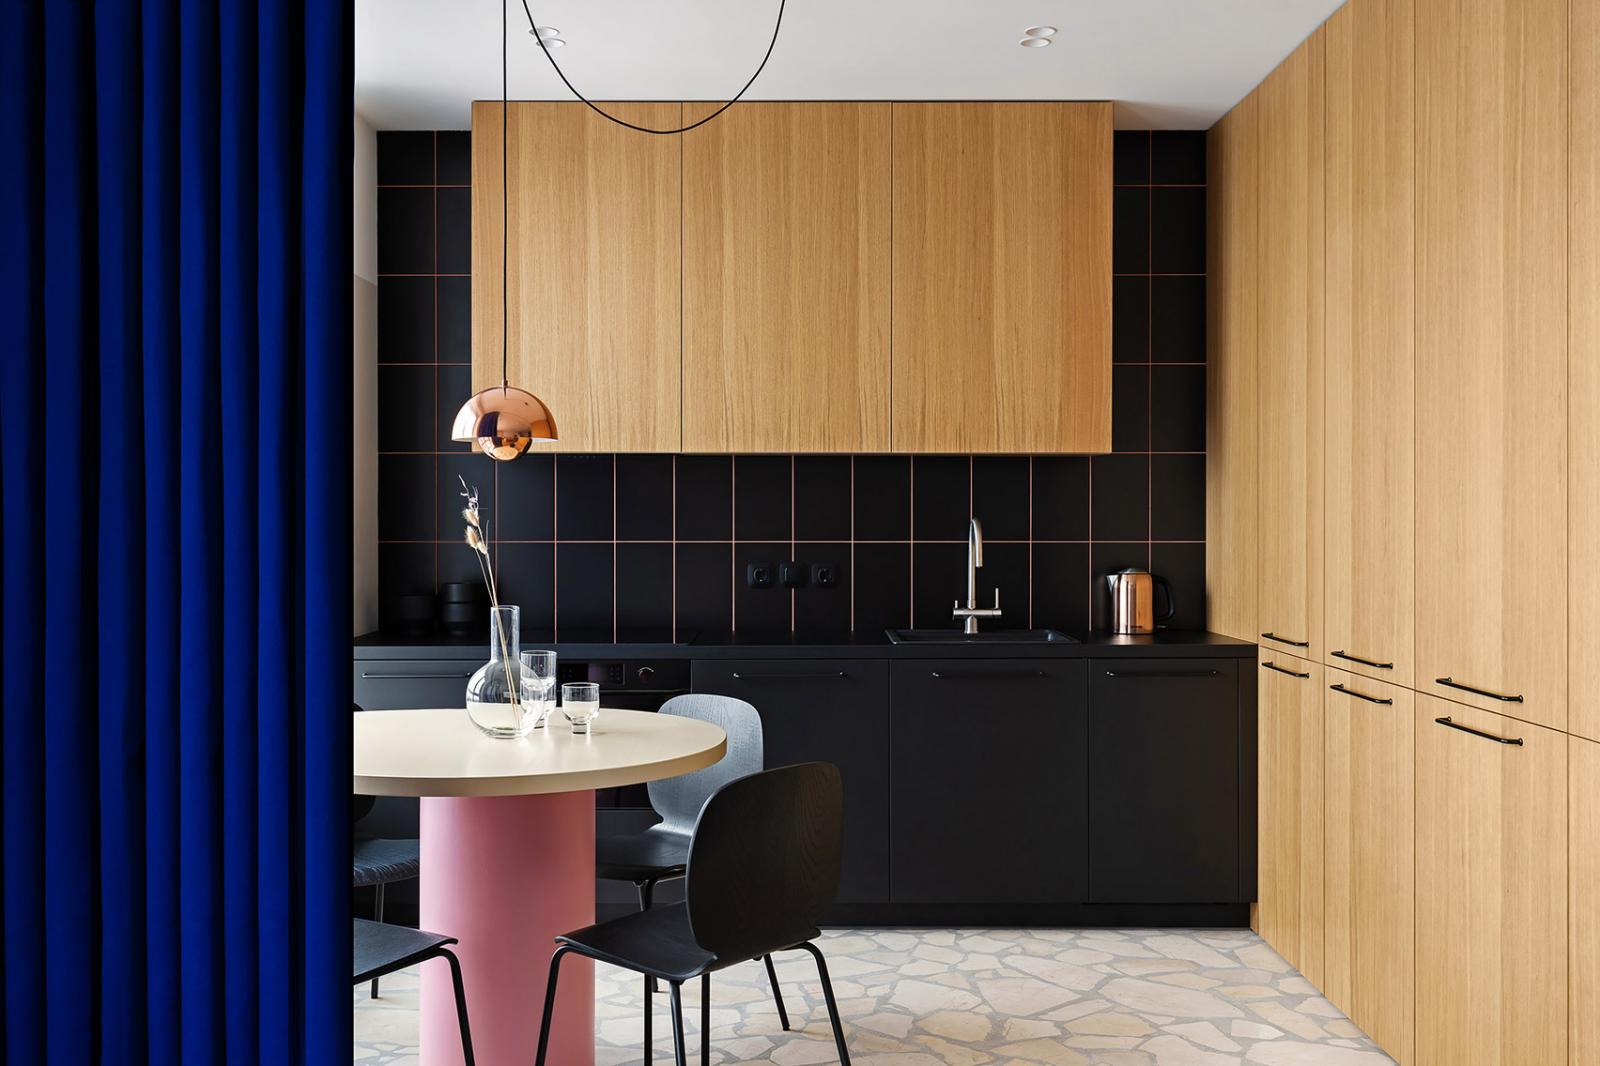 Hình ảnh phòng bếp với tường ốp gạch màu đen, cùng tông với tủ dưới, tủ trên bằng gỗ màu sáng, cạnh đó là bàn ăn hình tròn màu hồng và rèm cửa màu xanh coban